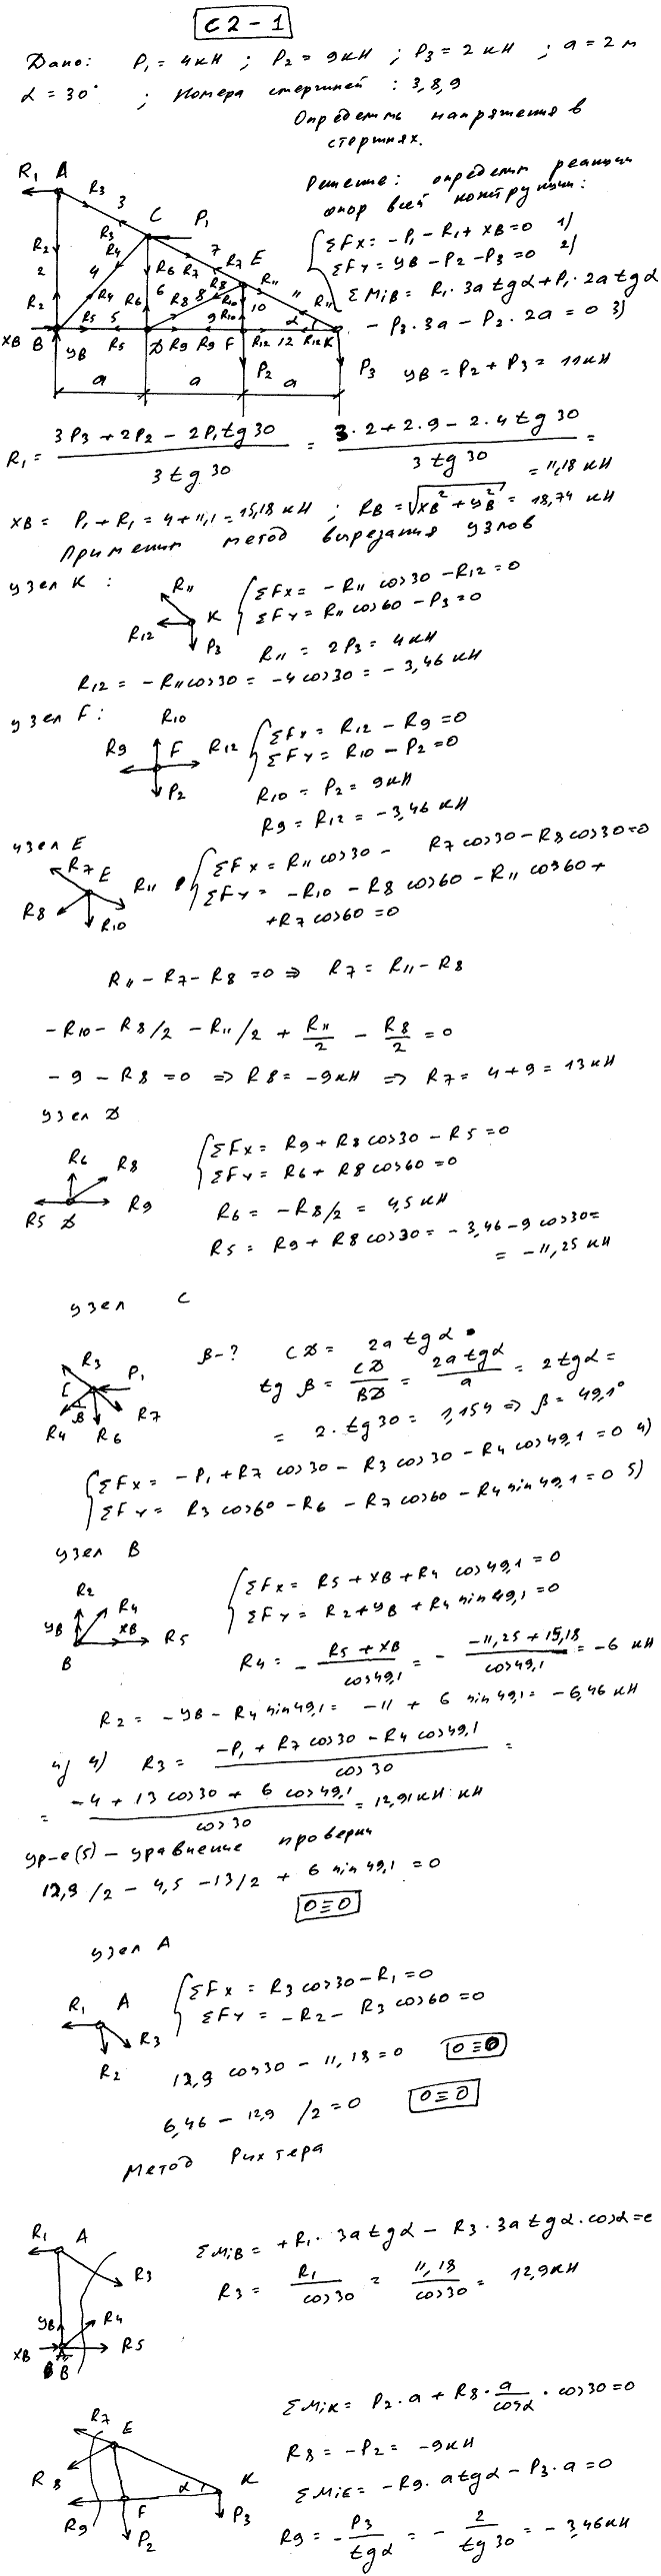 Задание C2 вариант 1. P1=4 кН, P2=9 кН, P3=2 кН, a=2 м, α=30 град, номер стержня 3, 8, 9